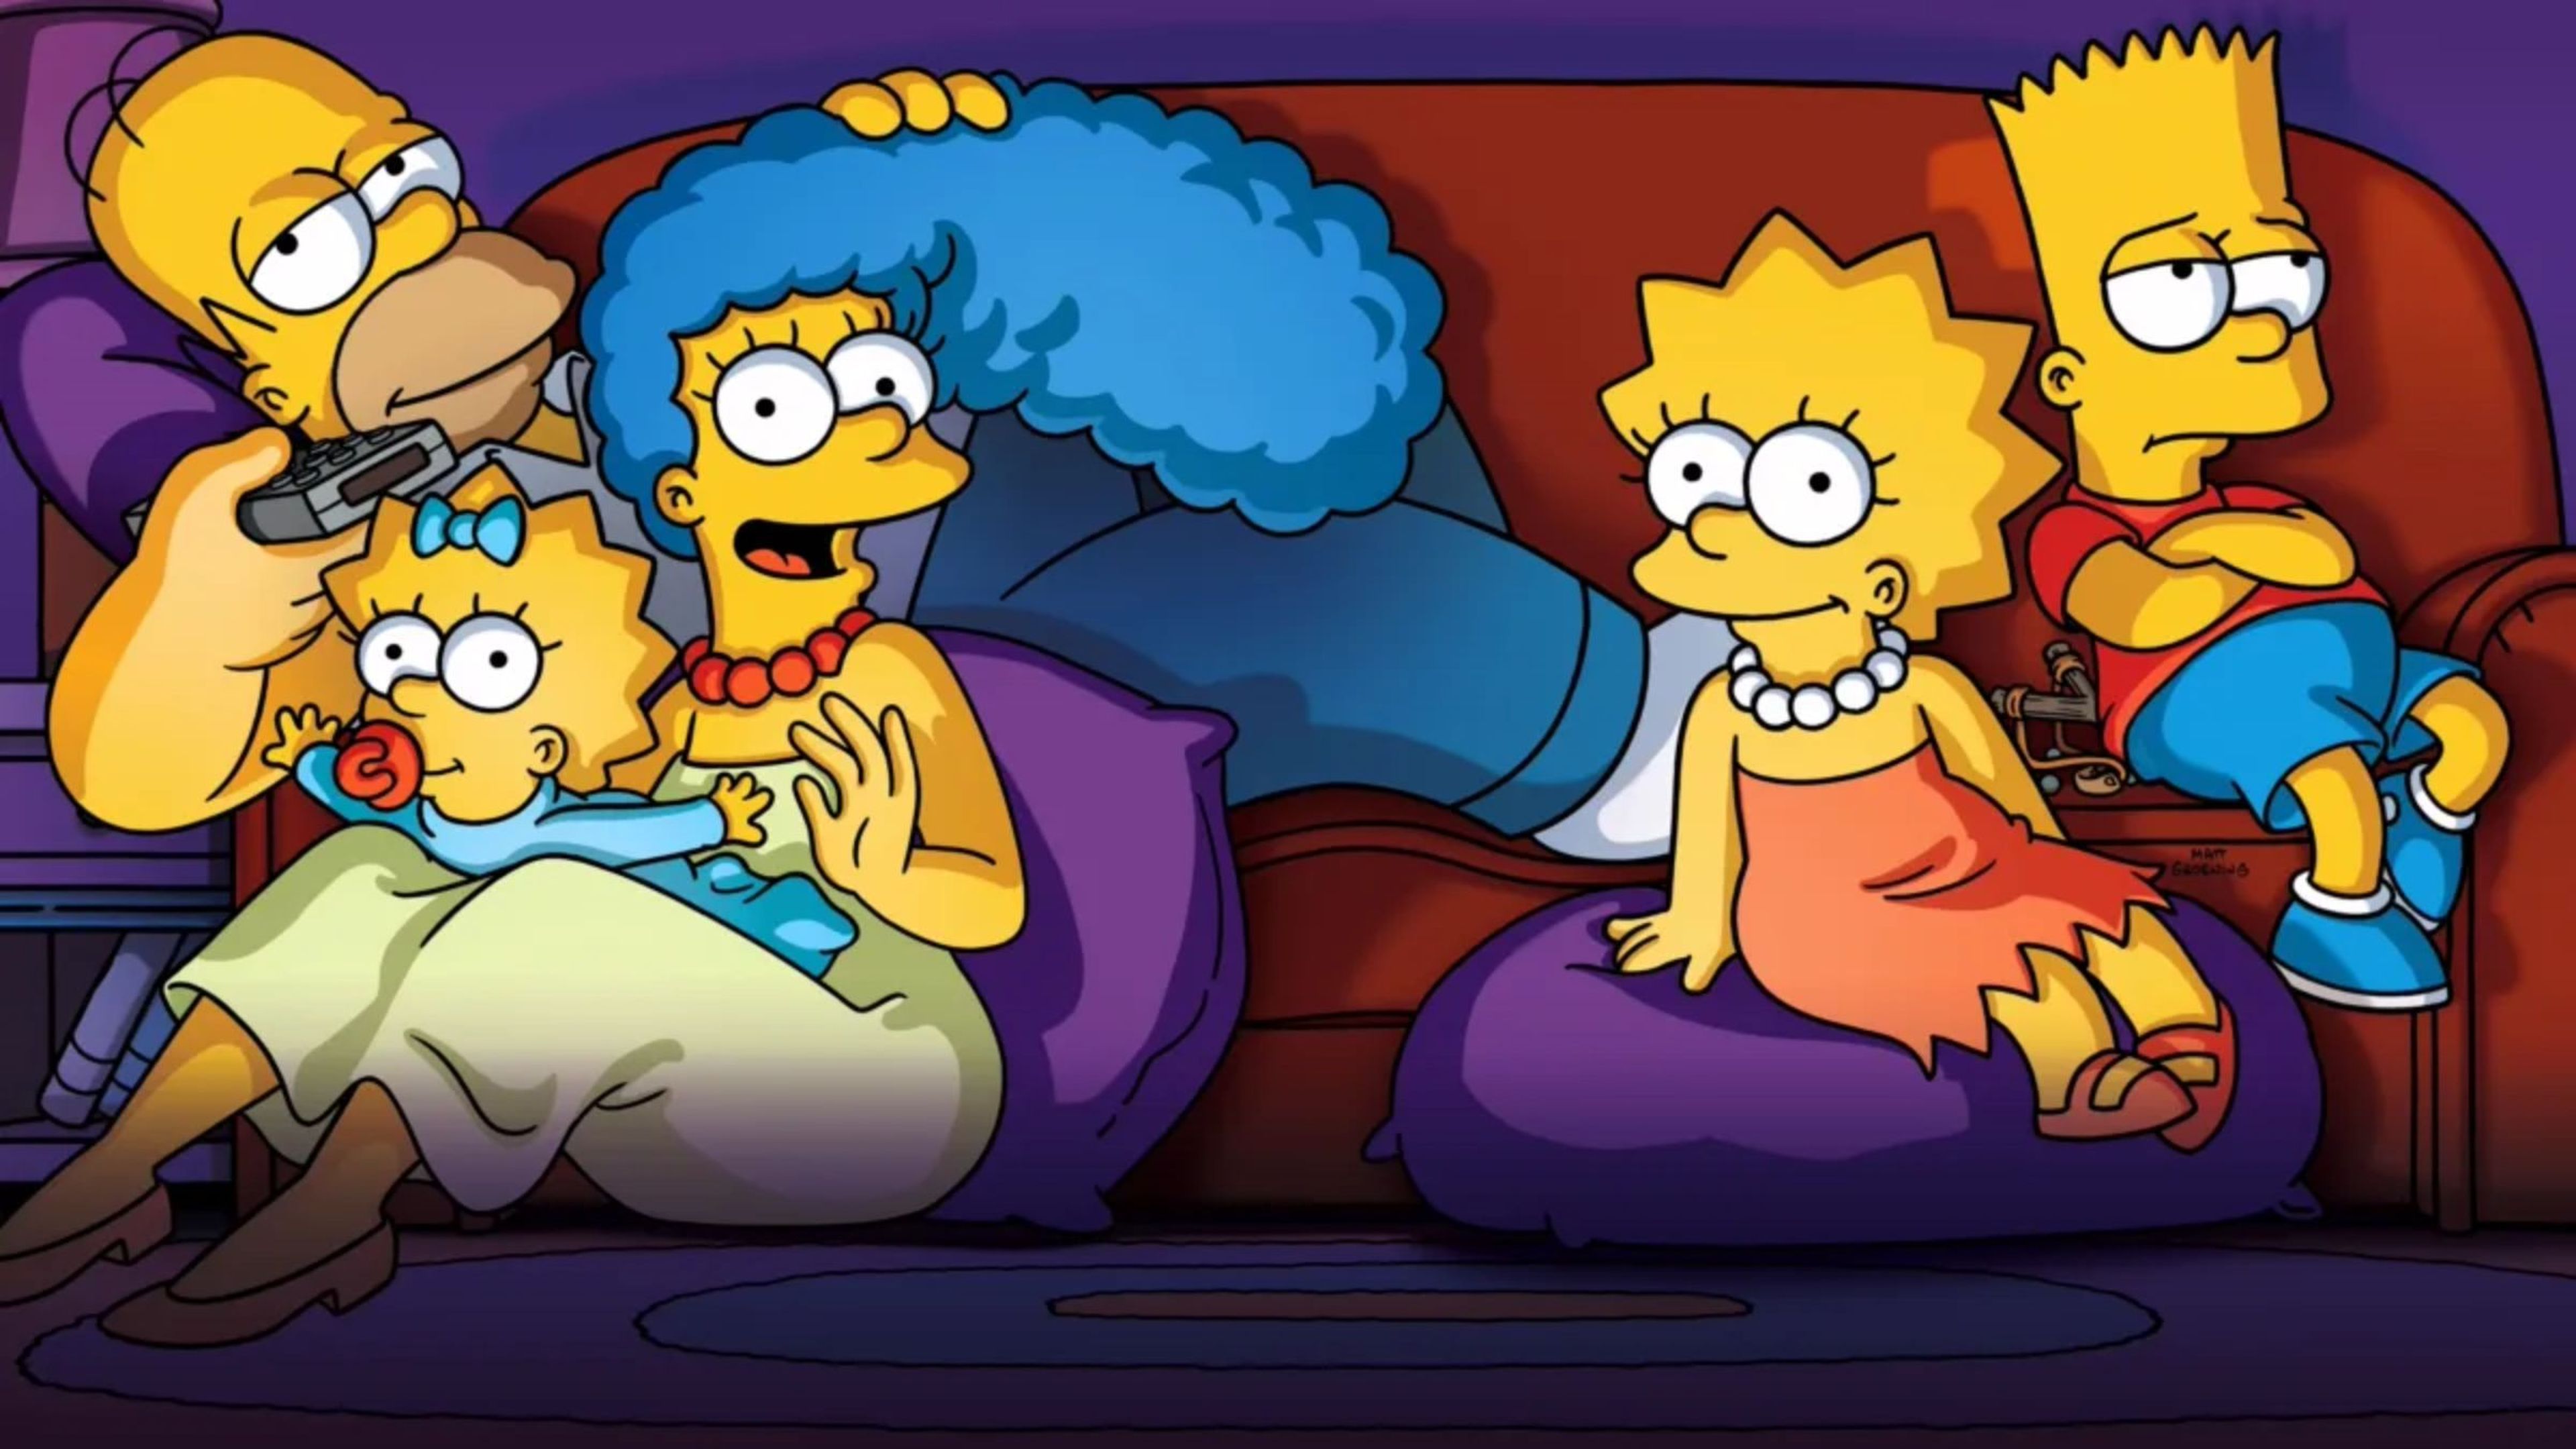 La leyenda era cierta: Los Simpson escondieron un película en sus episodios, y ahora puedes verla